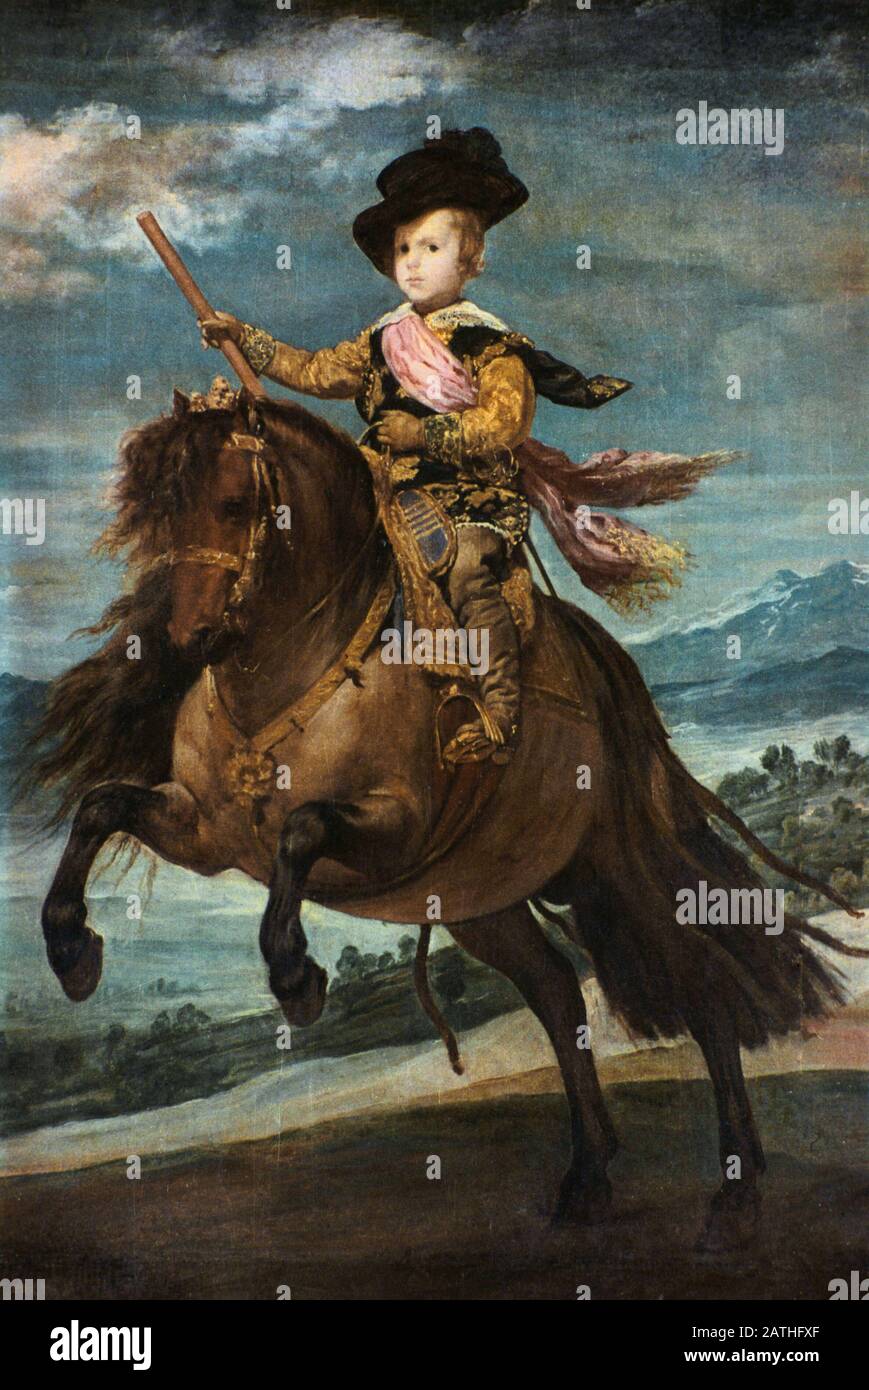 Diego Velazquez Ecole d'Espagne Portrait équestre du Prince Balthasar Charles El principe Baltasar Carlos, une huile de caballo sur toile (211.5 x 177 cm) c.1635 Madrid, Museo del Prado Banque D'Images